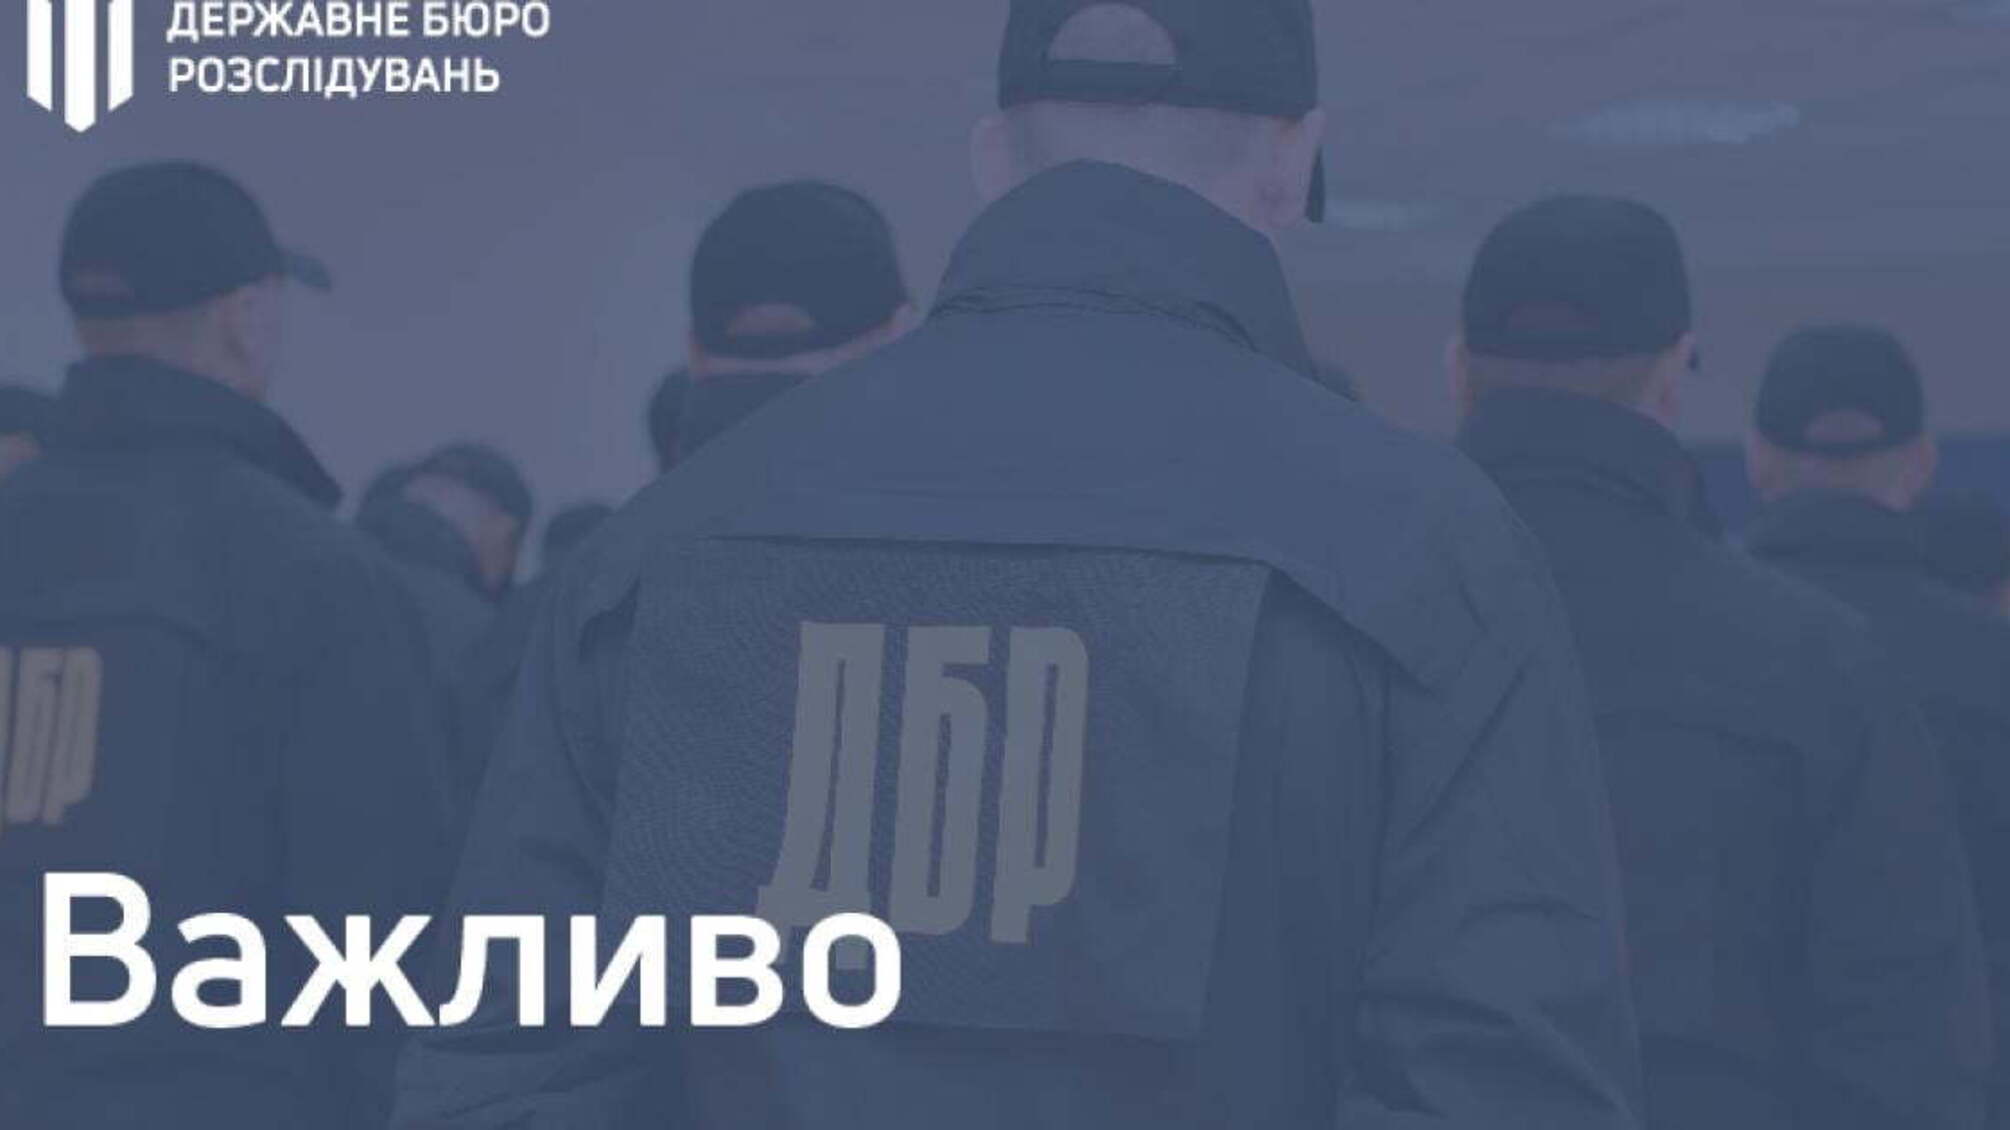 Заява щодо «справи Чорновол»: Державне бюро розслідувань поза політикою